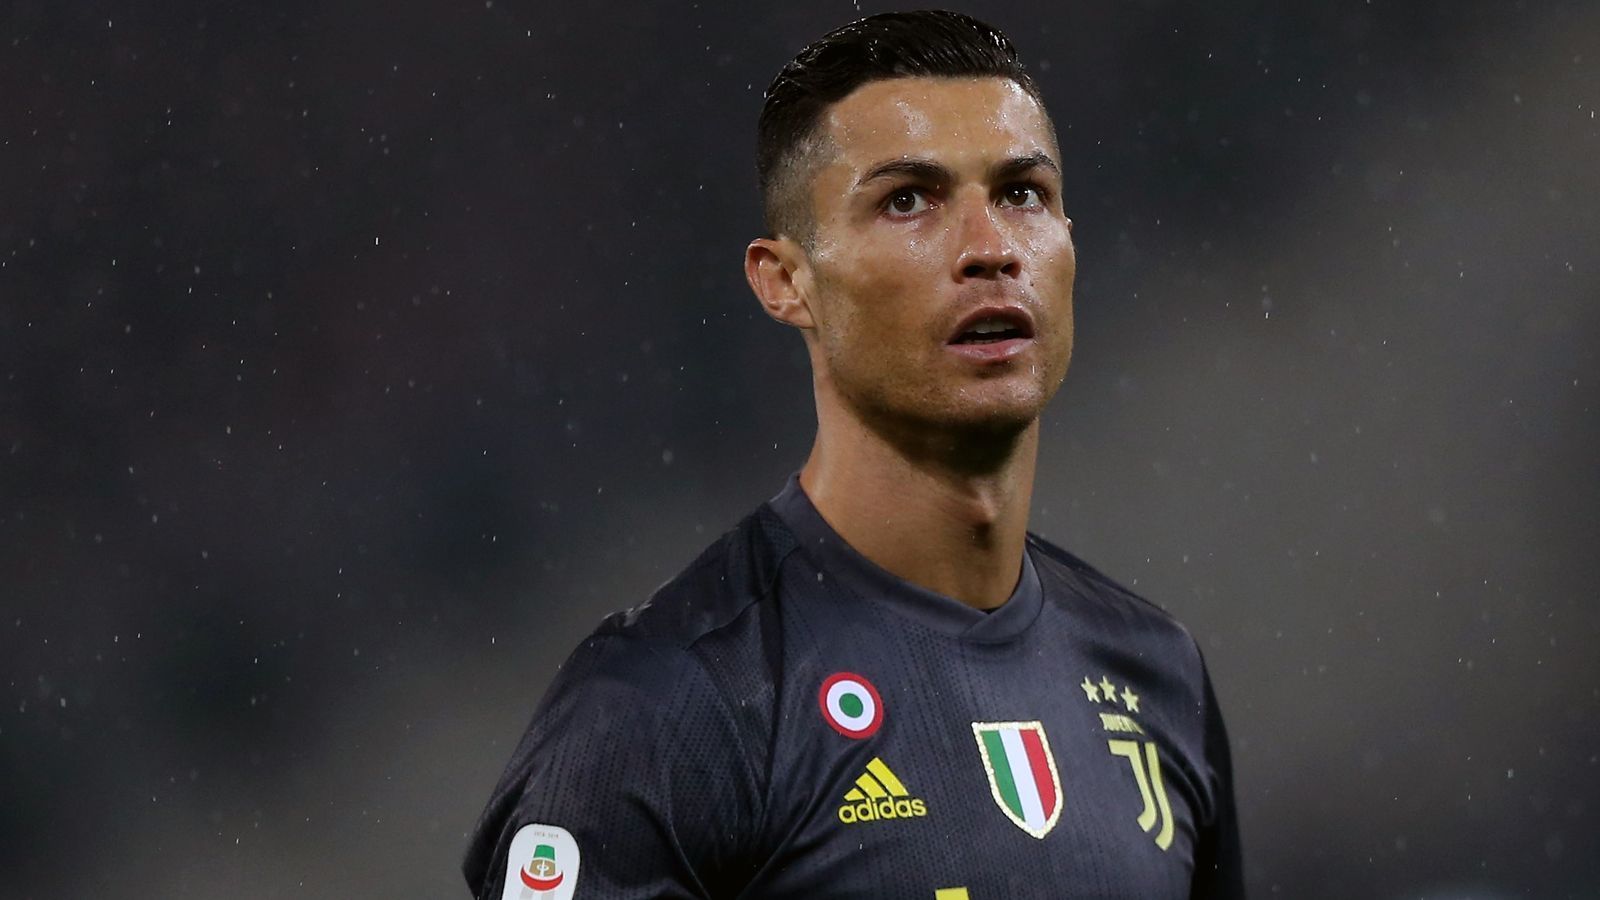 
                <strong>Platz 3 - Cristiano Ronaldo</strong><br>
                Tore von außerhalb des Strafraumes seit 2013: 23Vereine: Juventus Turin, Real Madrid
              